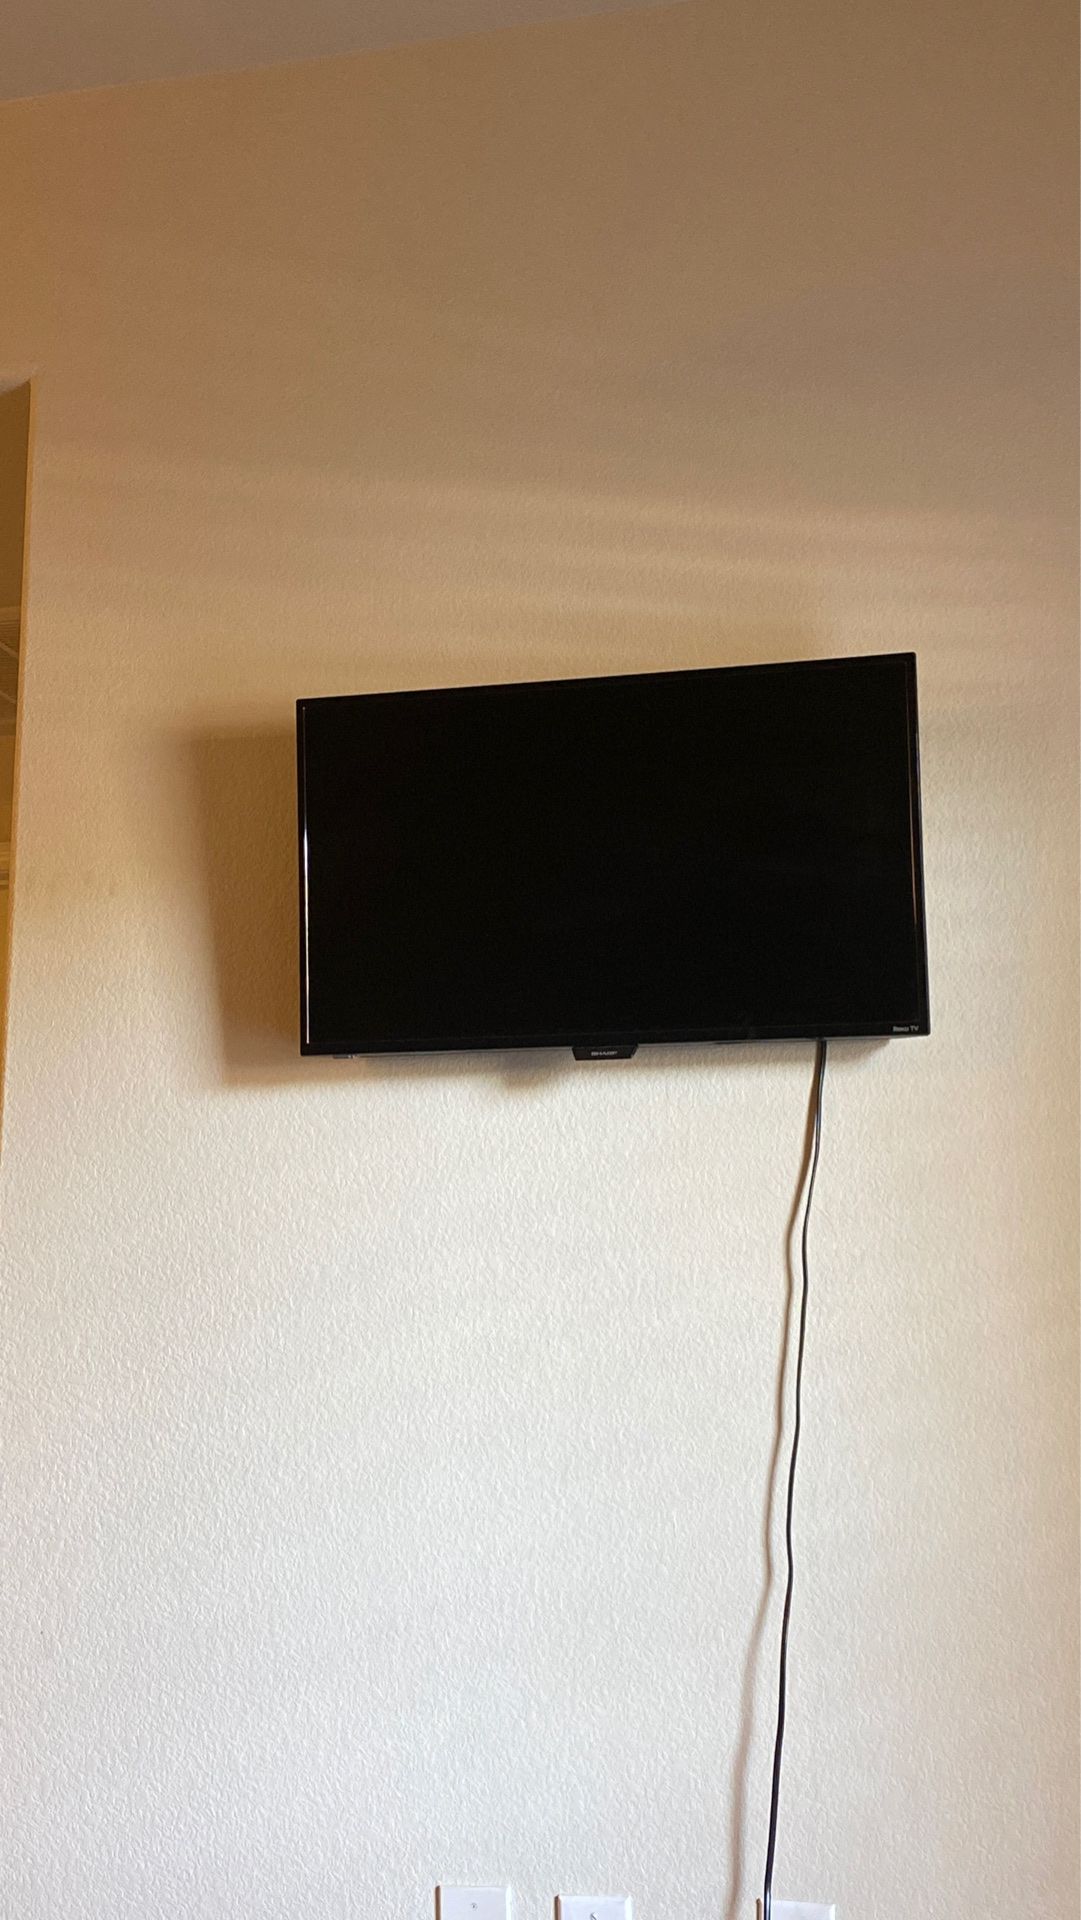 Smart TV 32 Inch